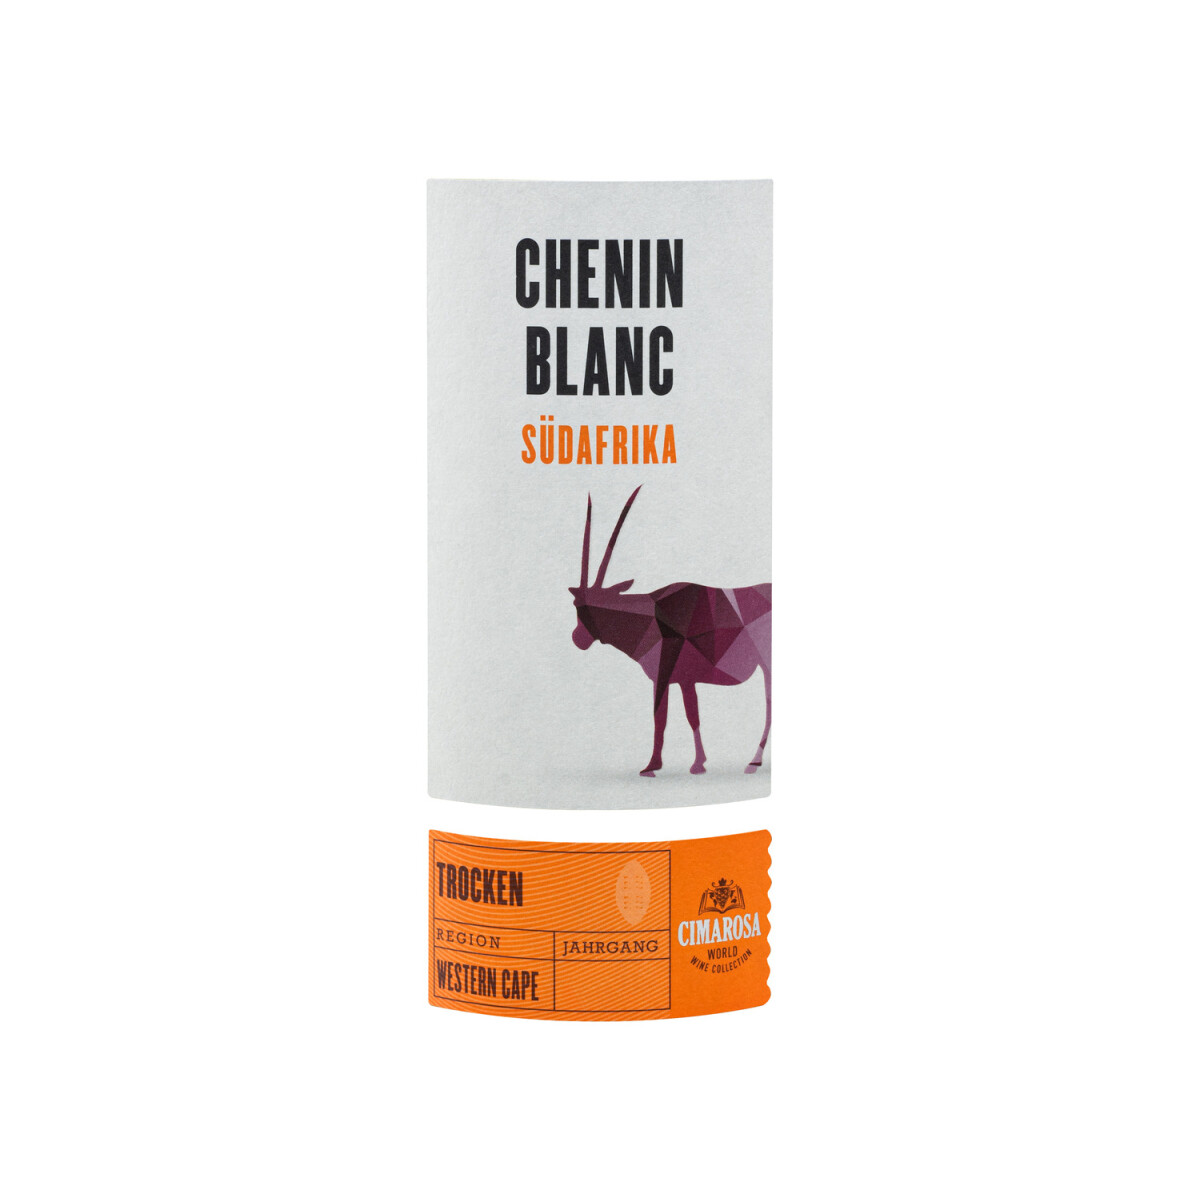 CIMAROSA Chenin Blanc Western Cape trocken, € 2022, Südafrika 2,99 Weißwein